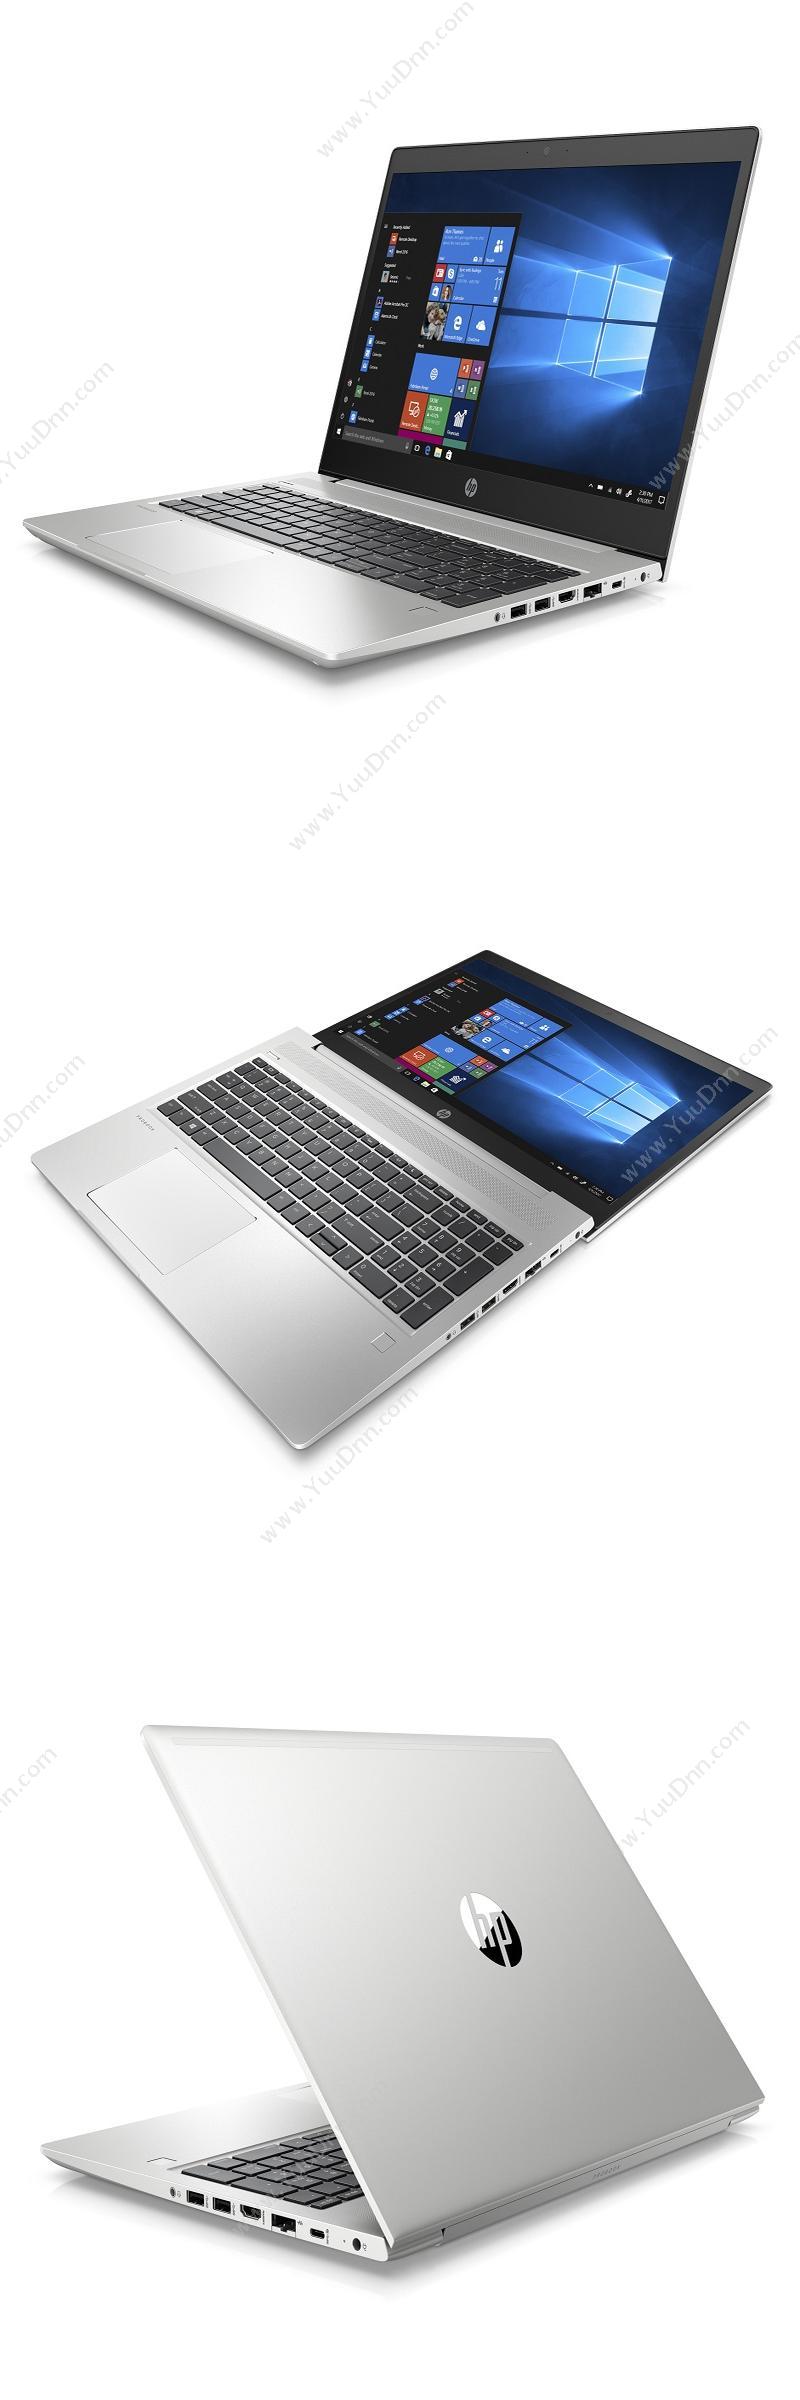 惠普 HP HP ProBook 450 G6-5100020705A 笔记本